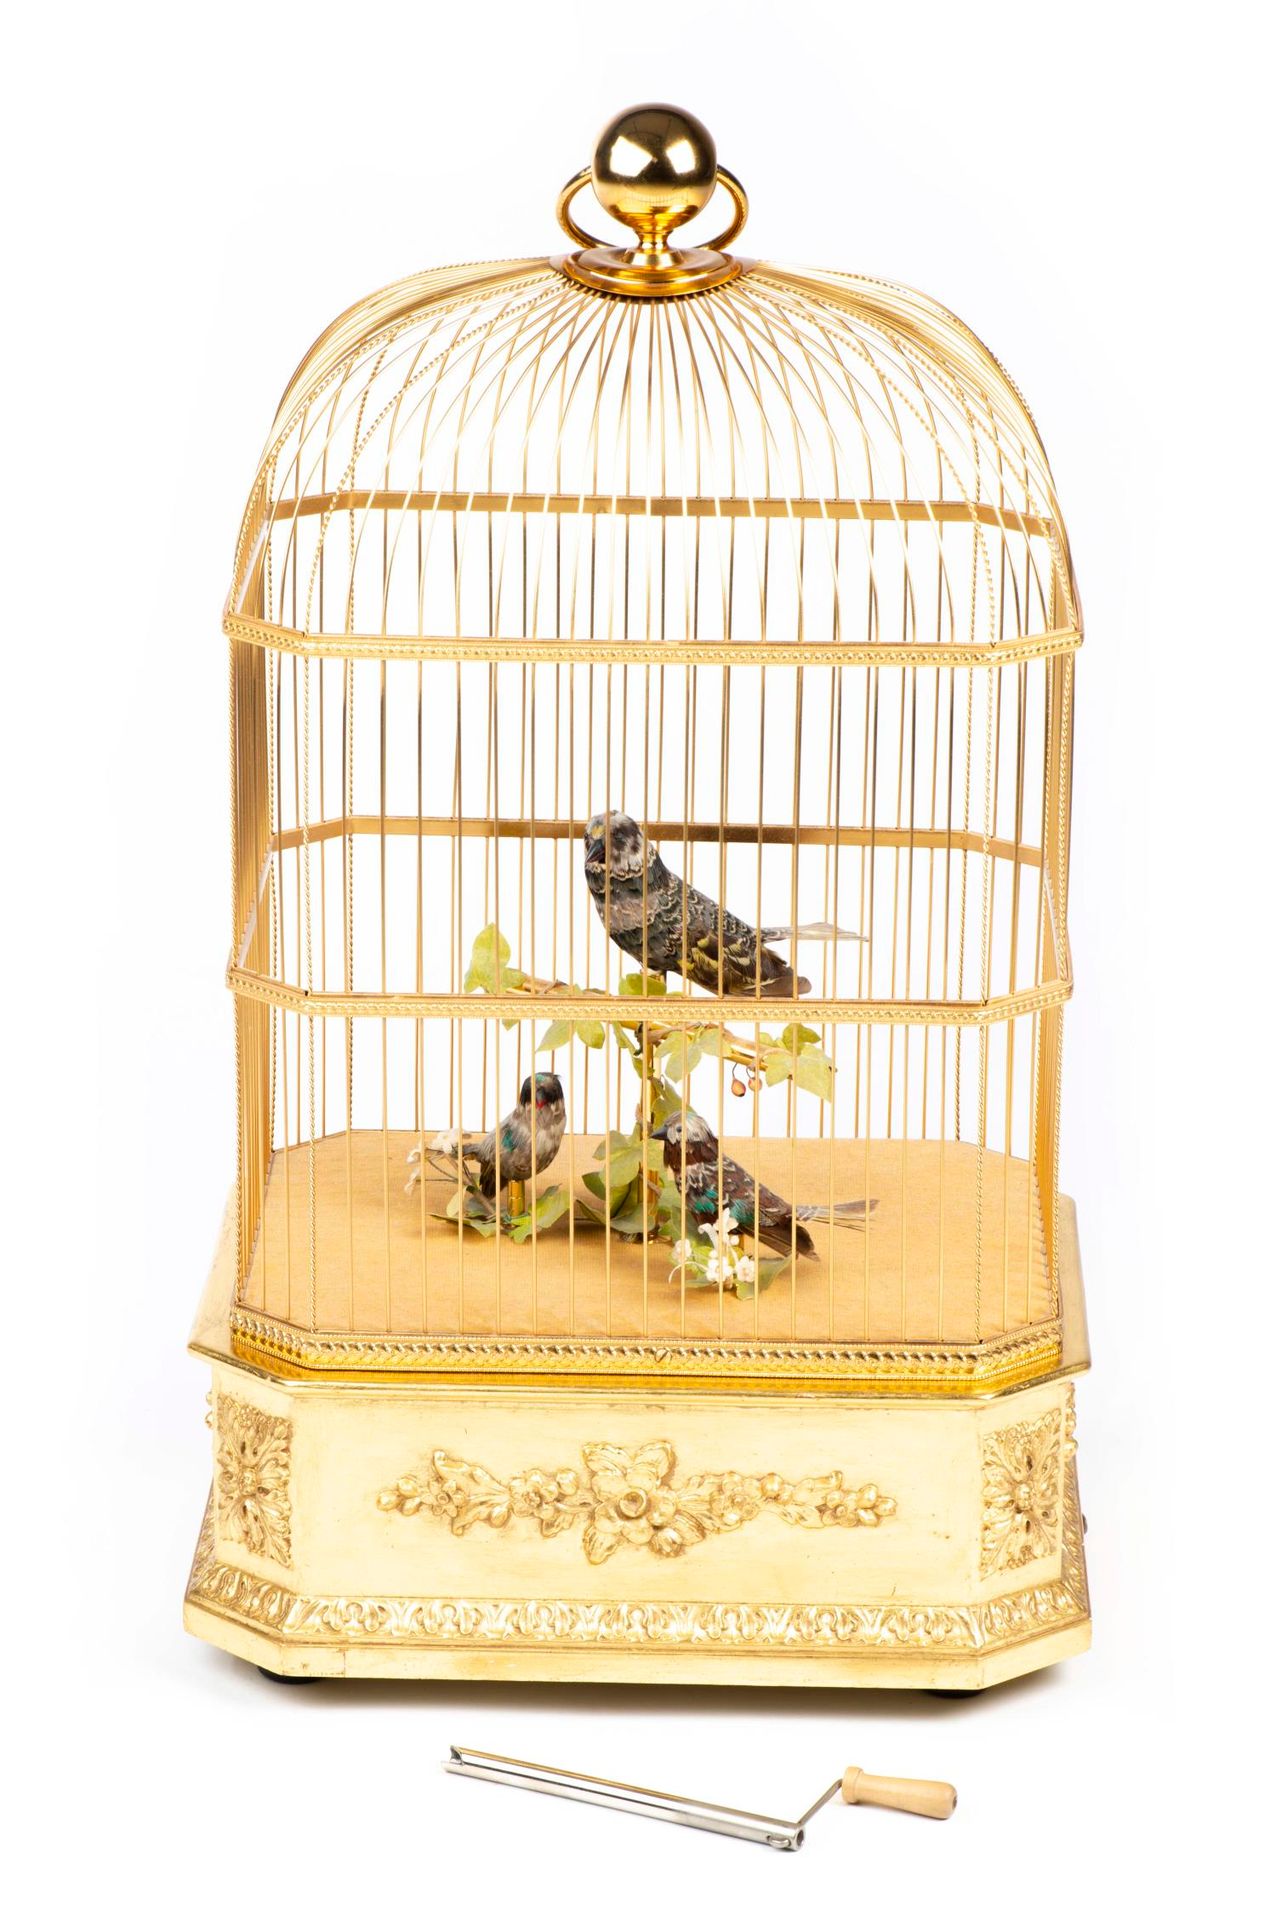 Null REUGE, Autómata 'Cage à oiseaux chanteurs', mecánico con 3 pájaros.

55 x 3&hellip;